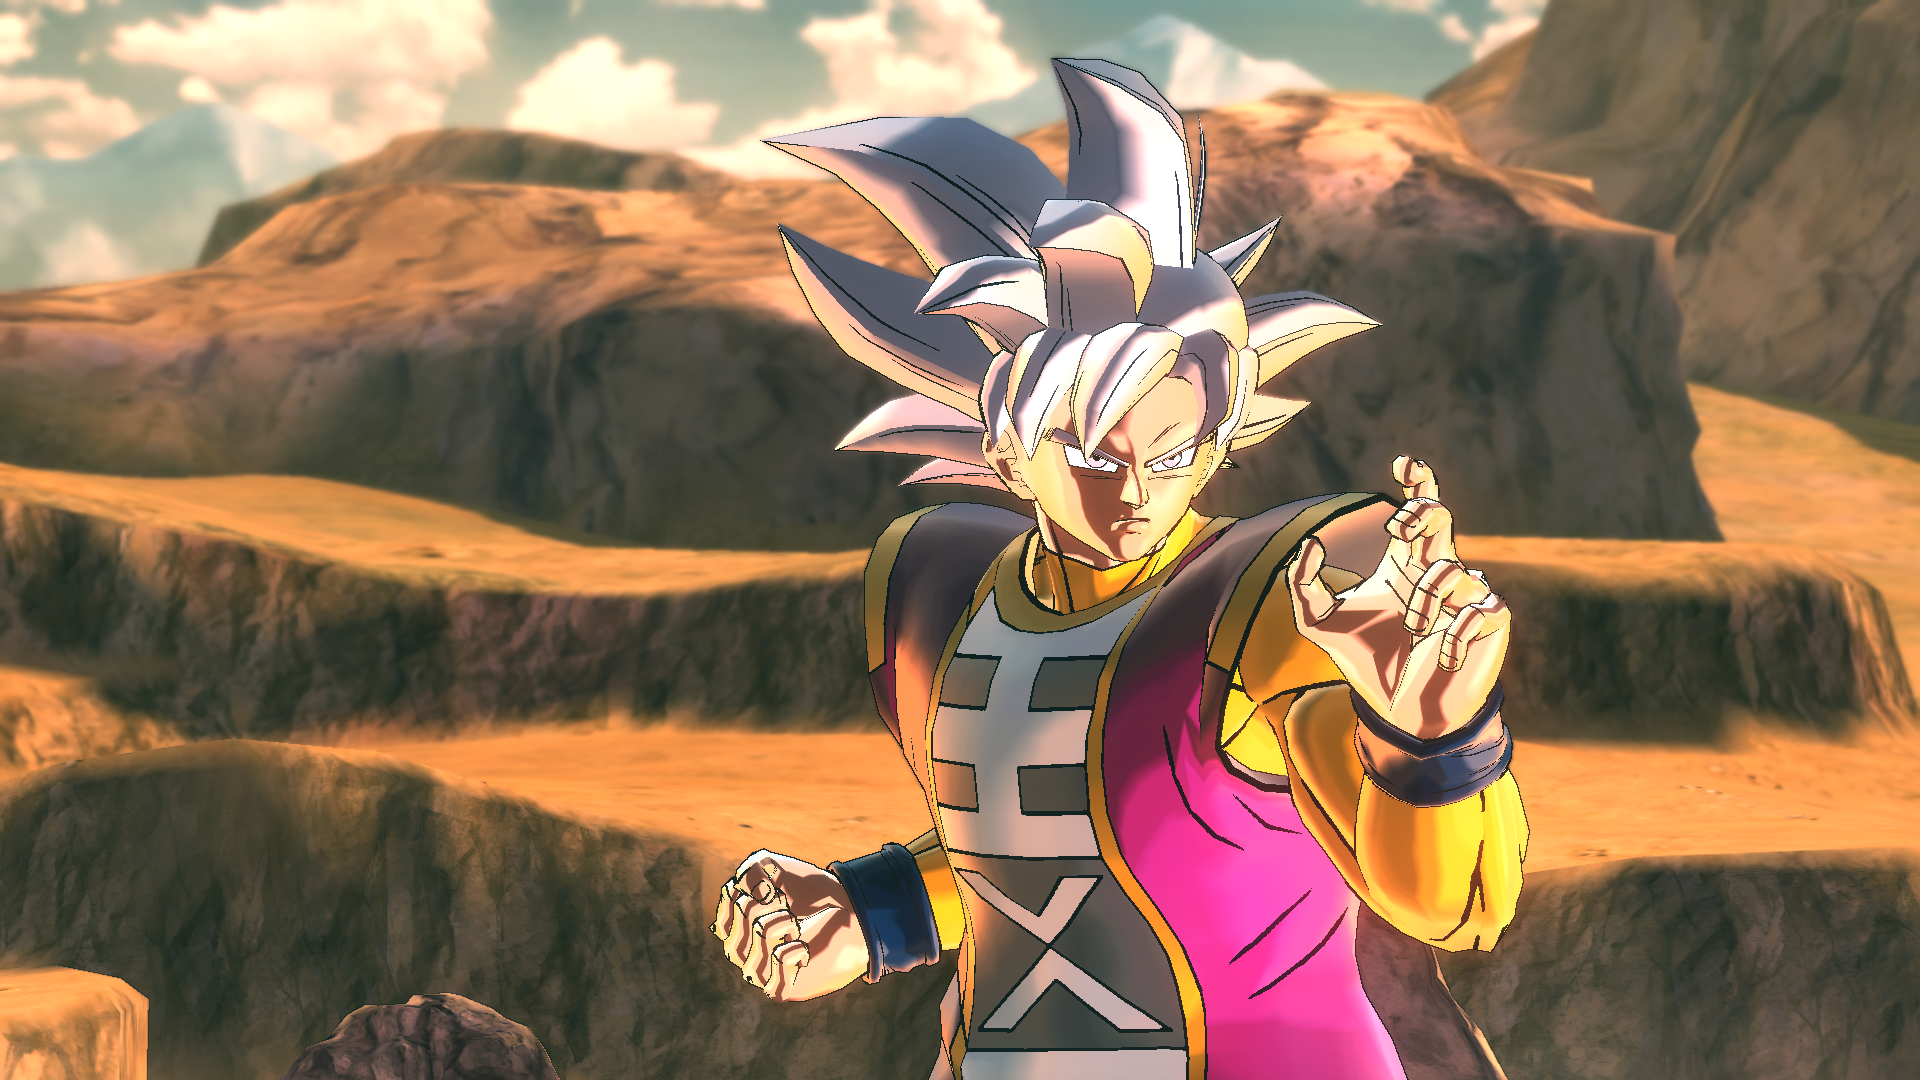 Goku (King of All)